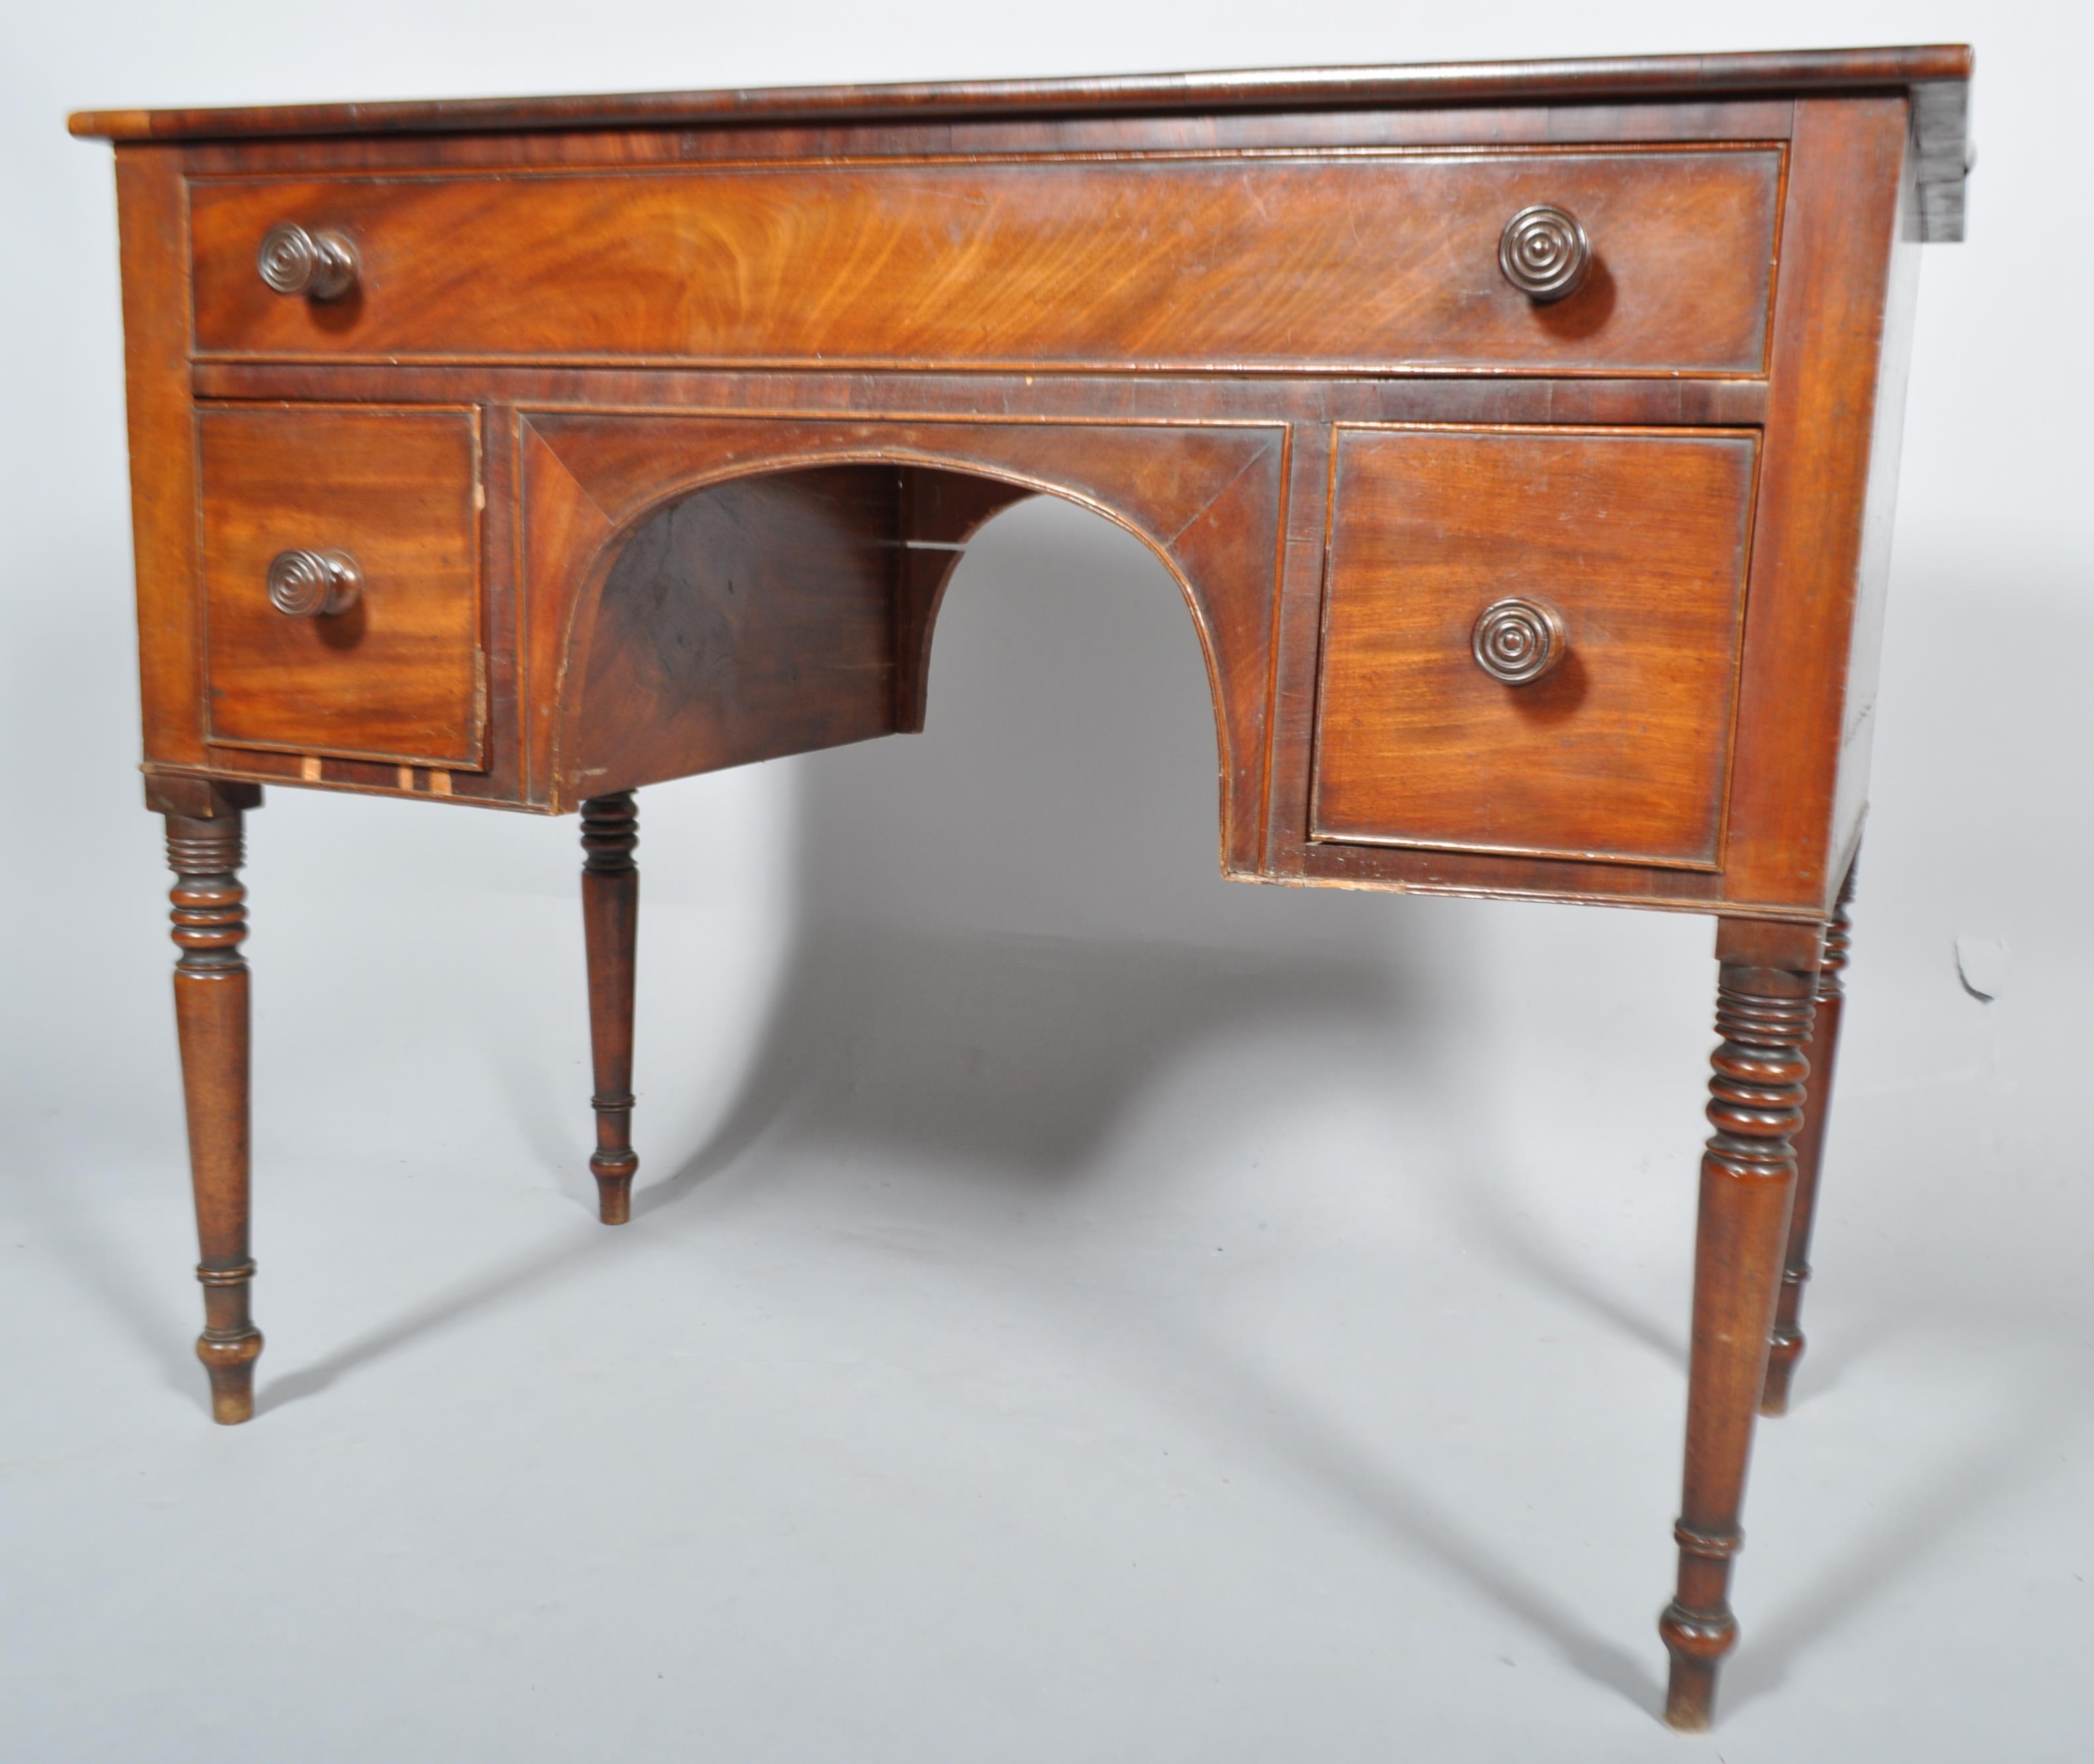 A Victorian mahogany kneehole desk, early 19th century,